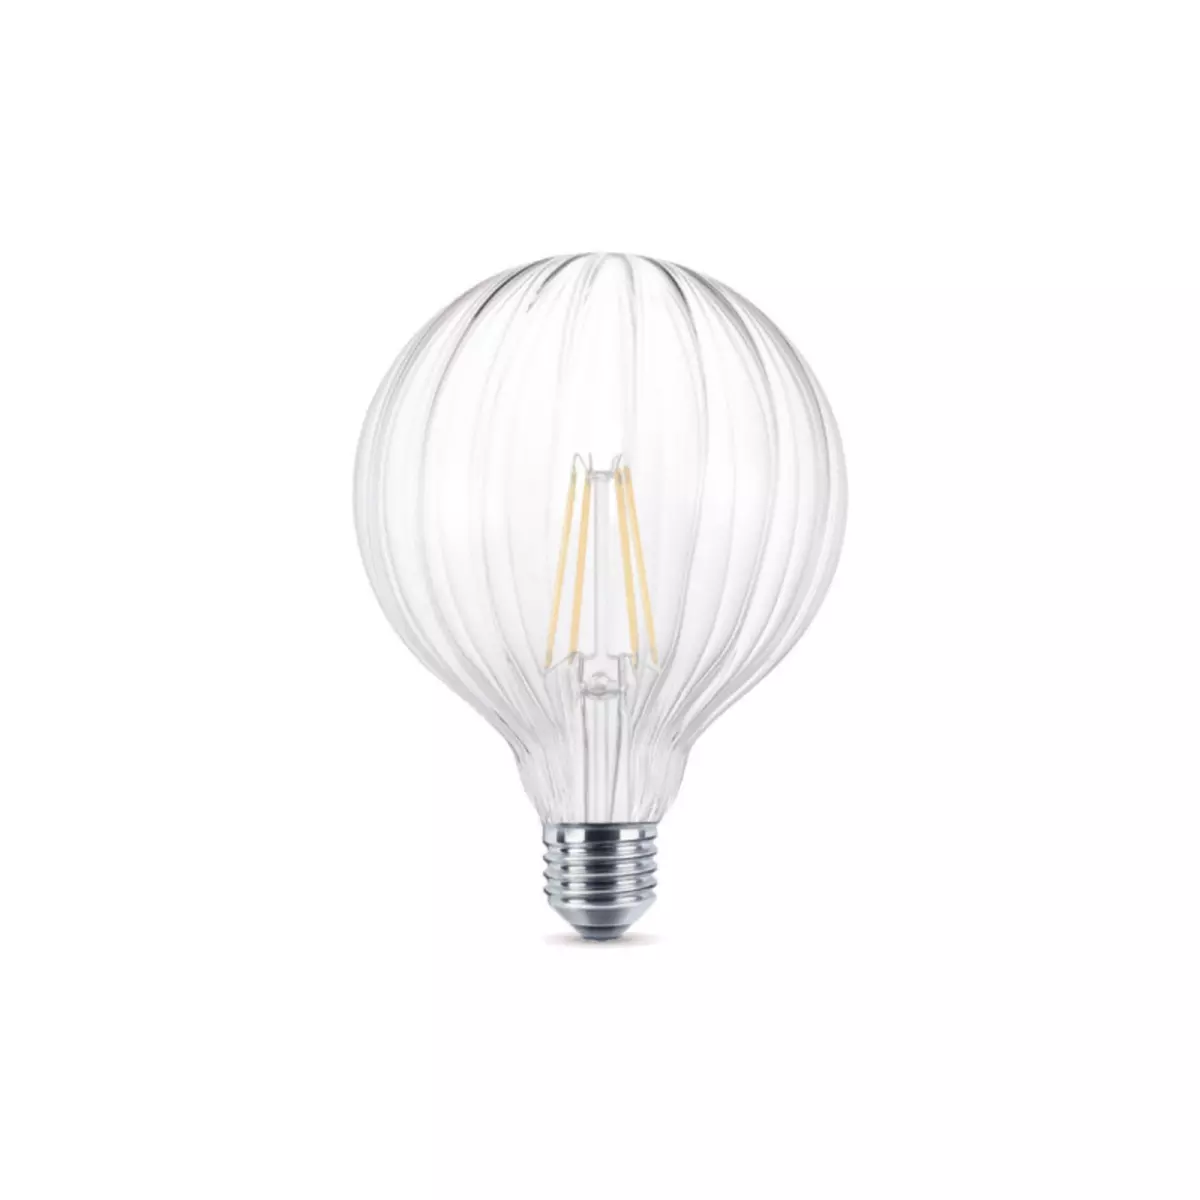  Ampoule LED striée claire XXCELL - 4 W - 420 lumens - 2700 K - E27